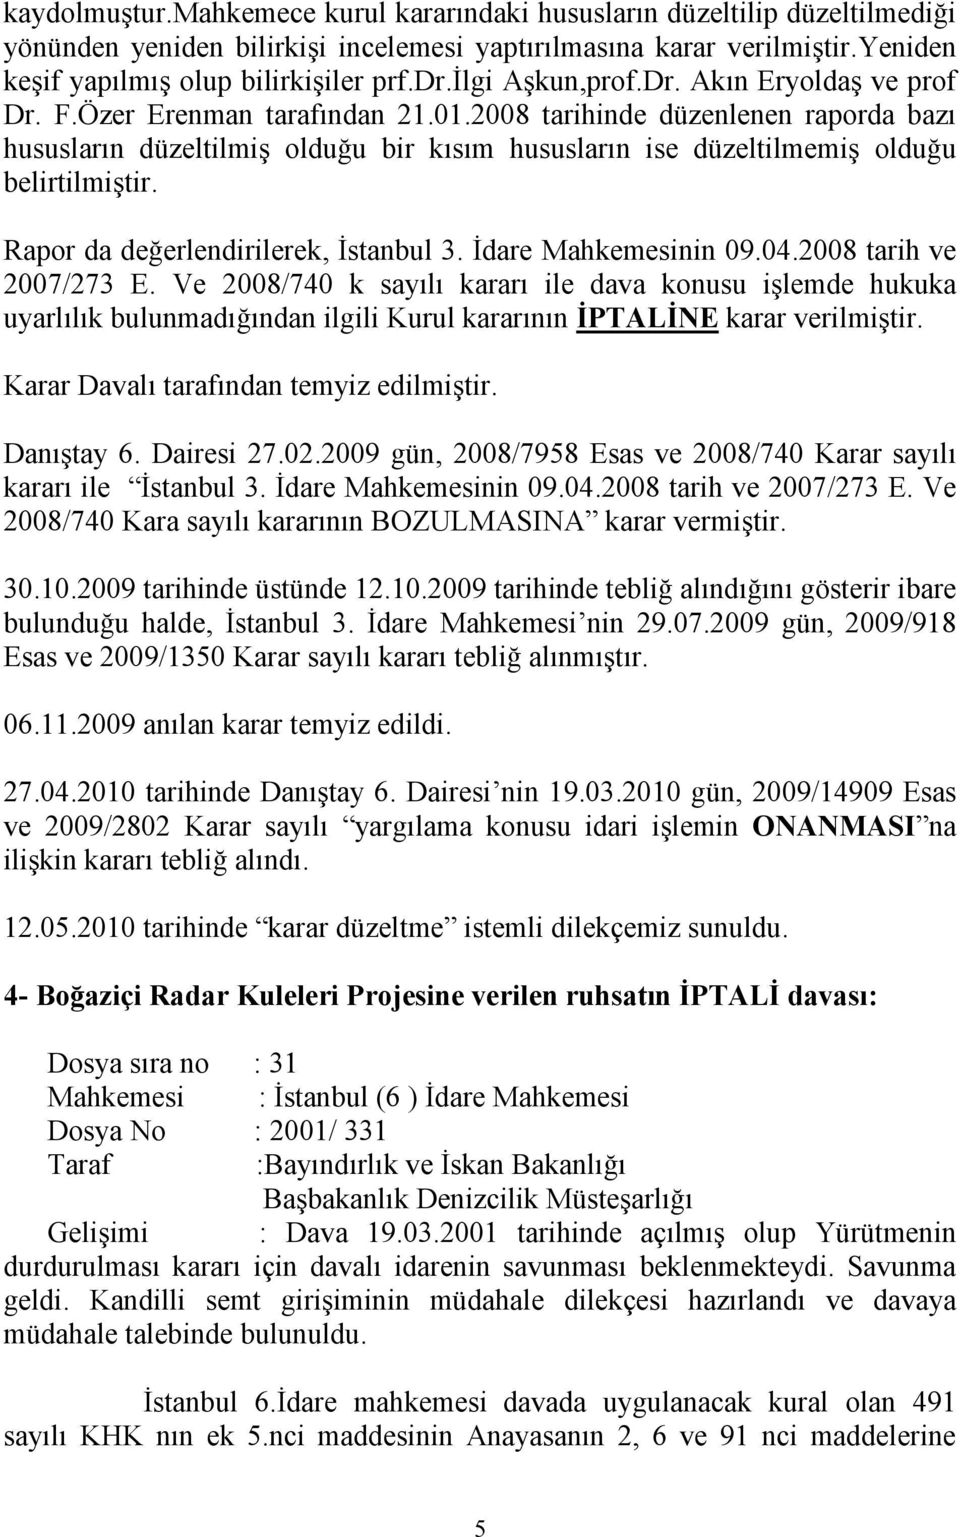 2008 tarihinde düzenlenen raporda bazı hususların düzeltilmiş olduğu bir kısım hususların ise düzeltilmemiş olduğu belirtilmiştir. Rapor da değerlendirilerek, İstanbul 3. İdare Mahkemesinin 09.04.